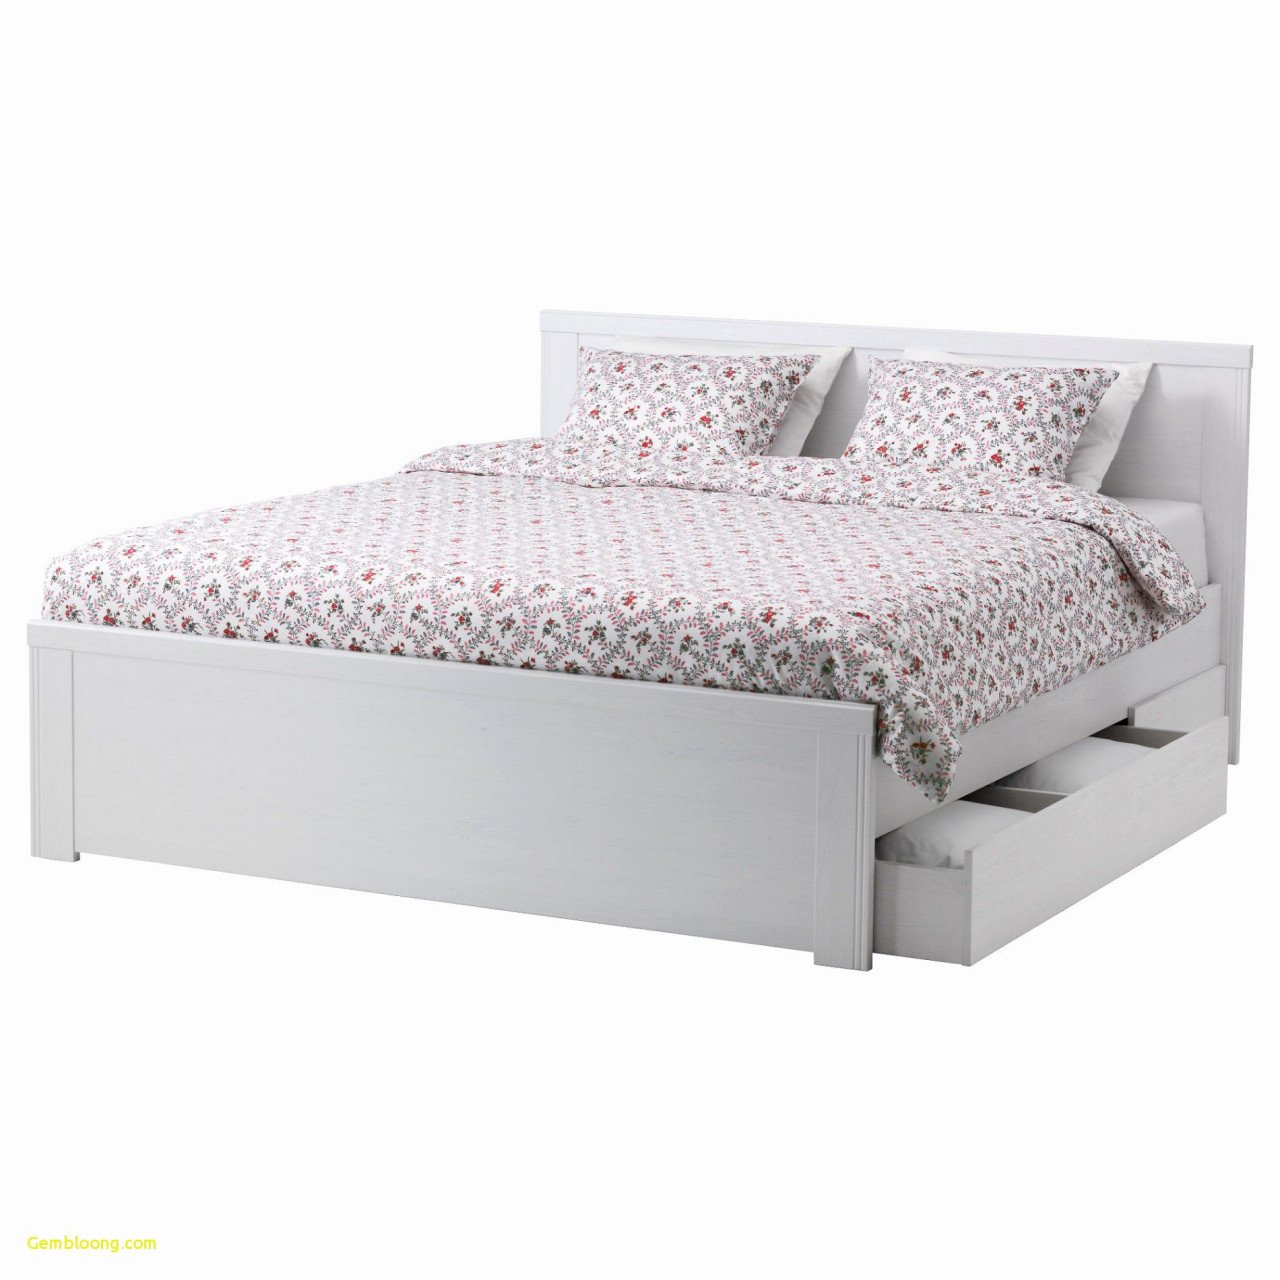 Complete Queen Bedroom Set Best Of King Metal Platform Bed — Procura Home Blog